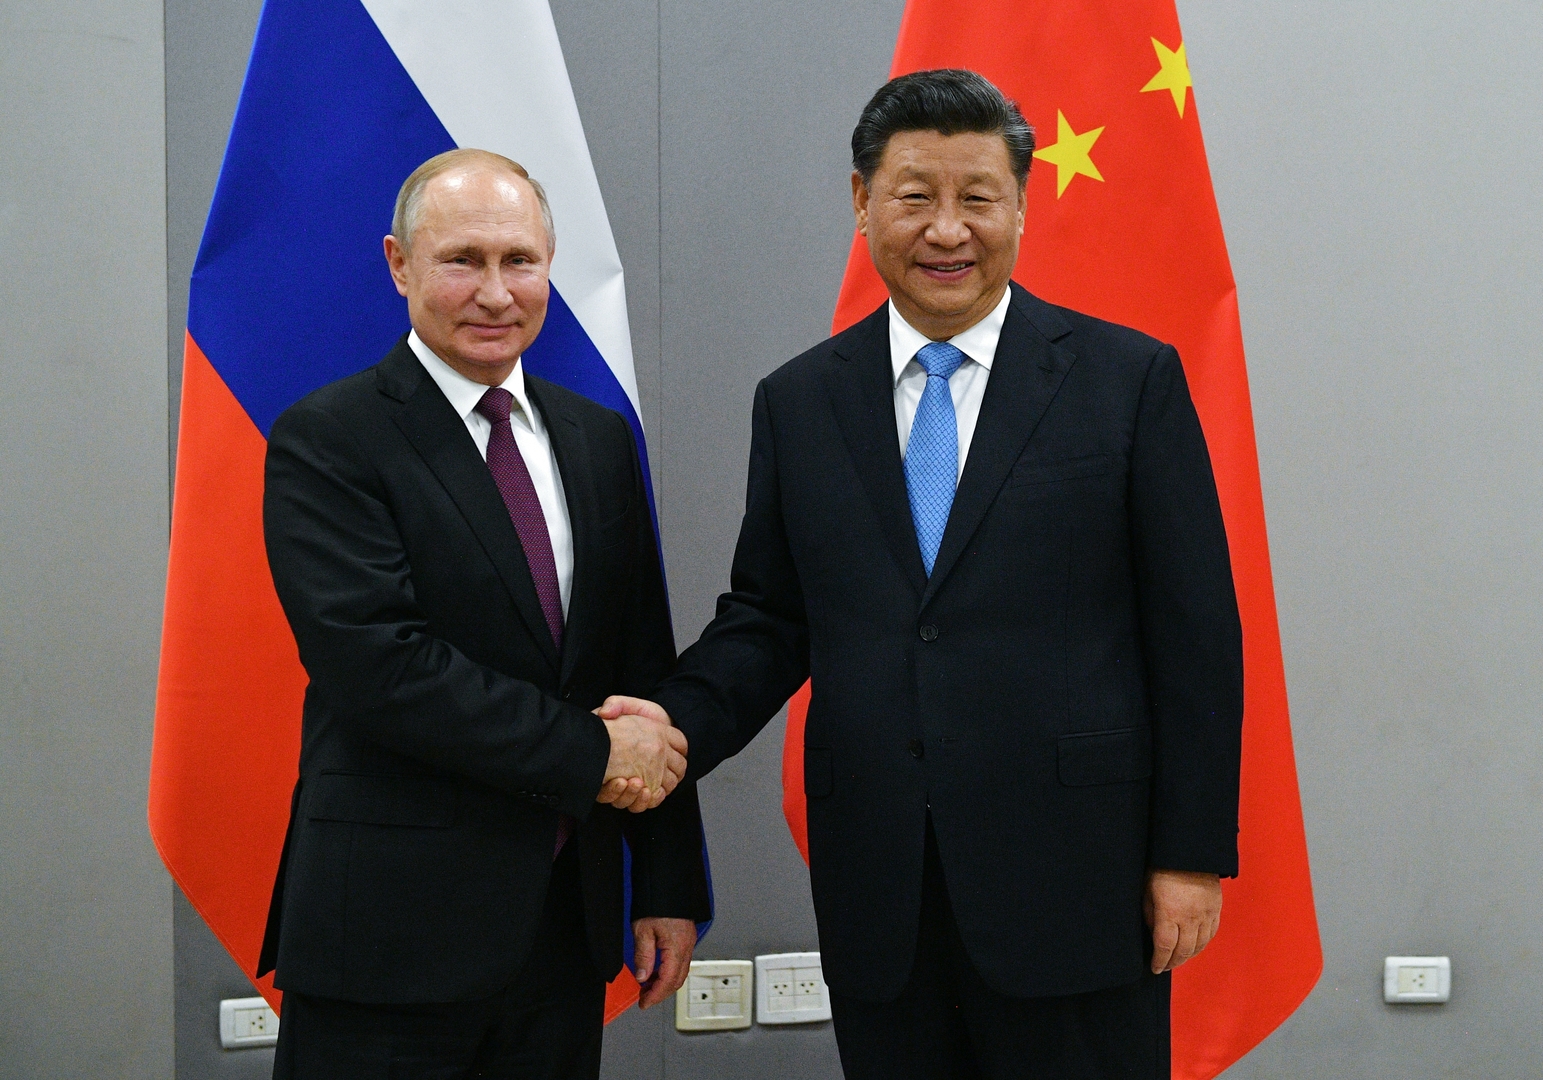 الرئيسان الروسي والصيني يناقشان التطورات في أفغانستان ومواجهة تدخلات خارجية